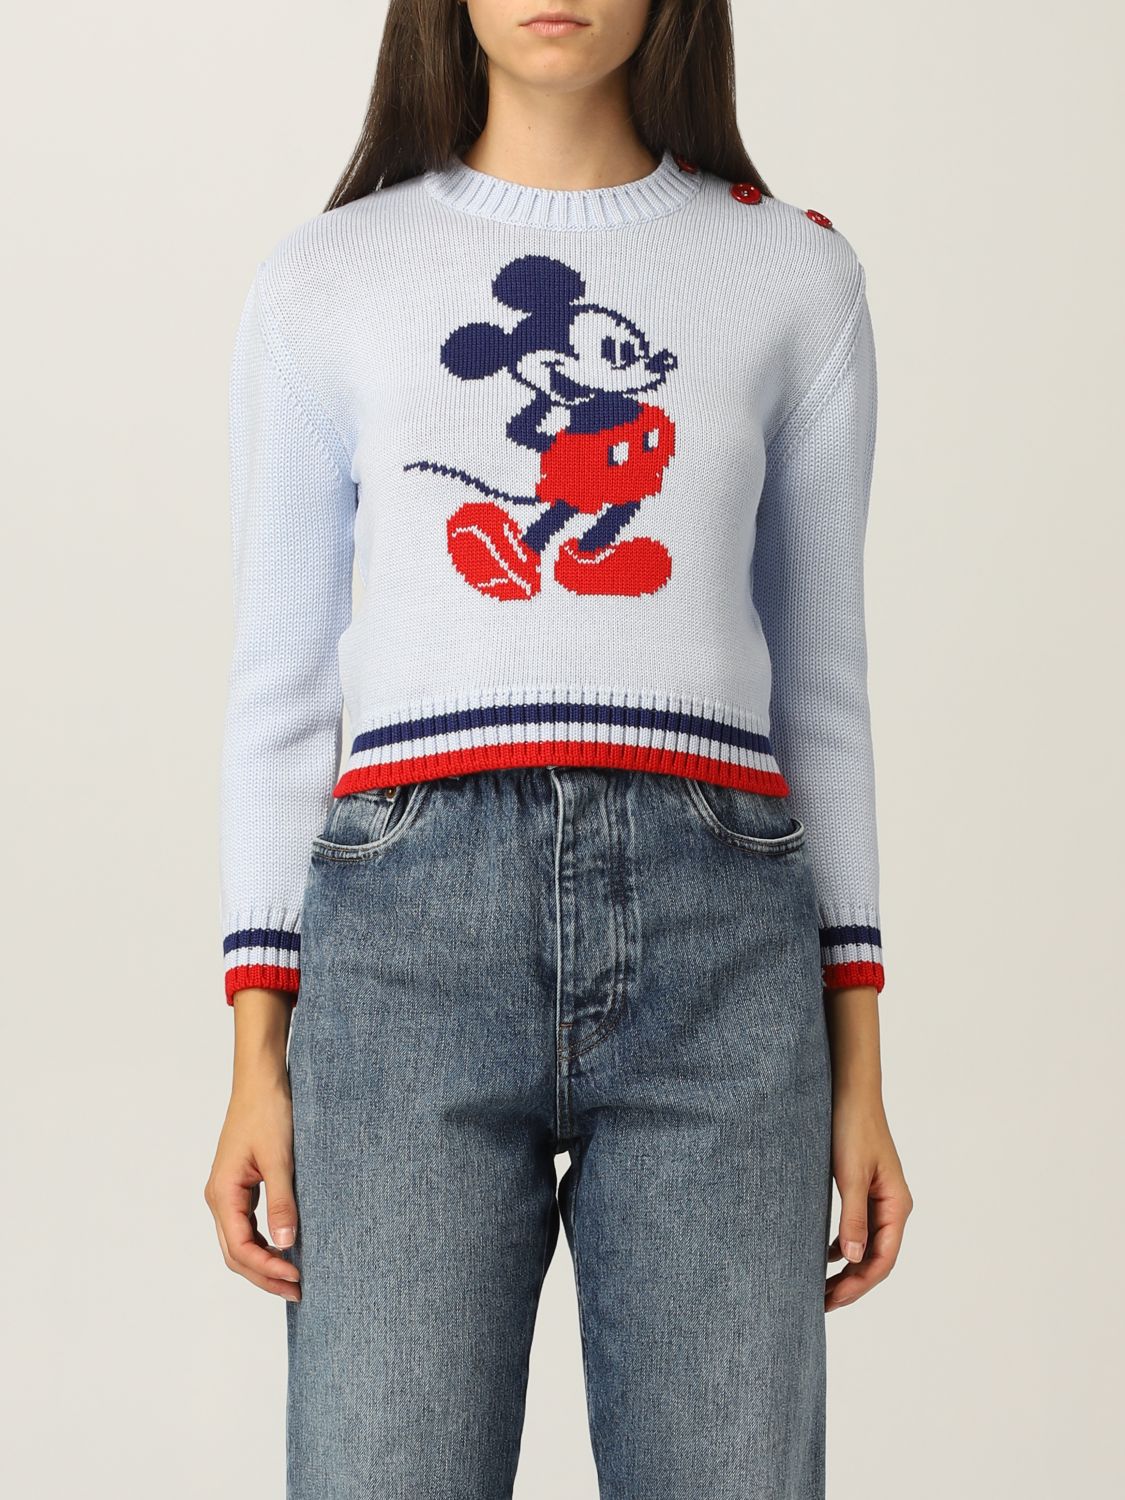 Miu Miu x Disney Mickey Mouse sweater